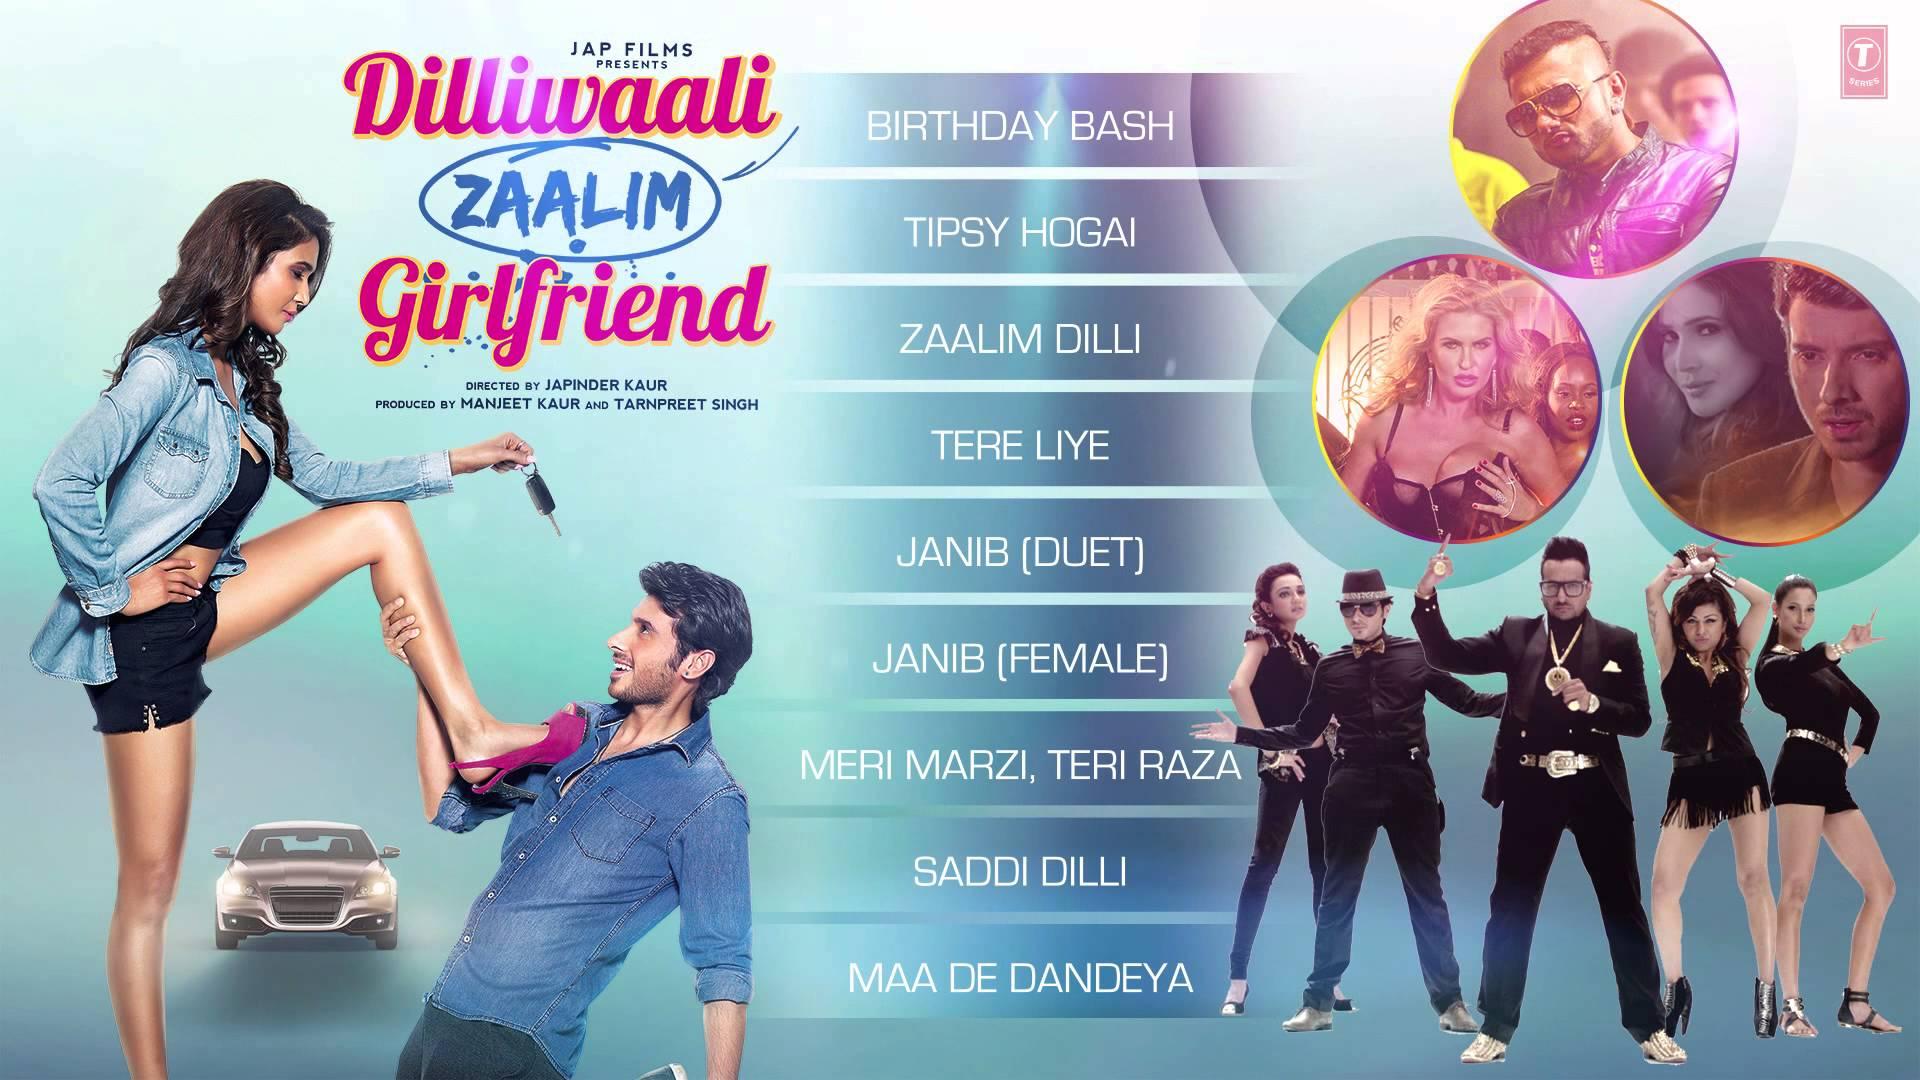 مشاهدة فيلم Dilliwaali Zaalim Girlfriend 2015 مترجم HD اون لاين